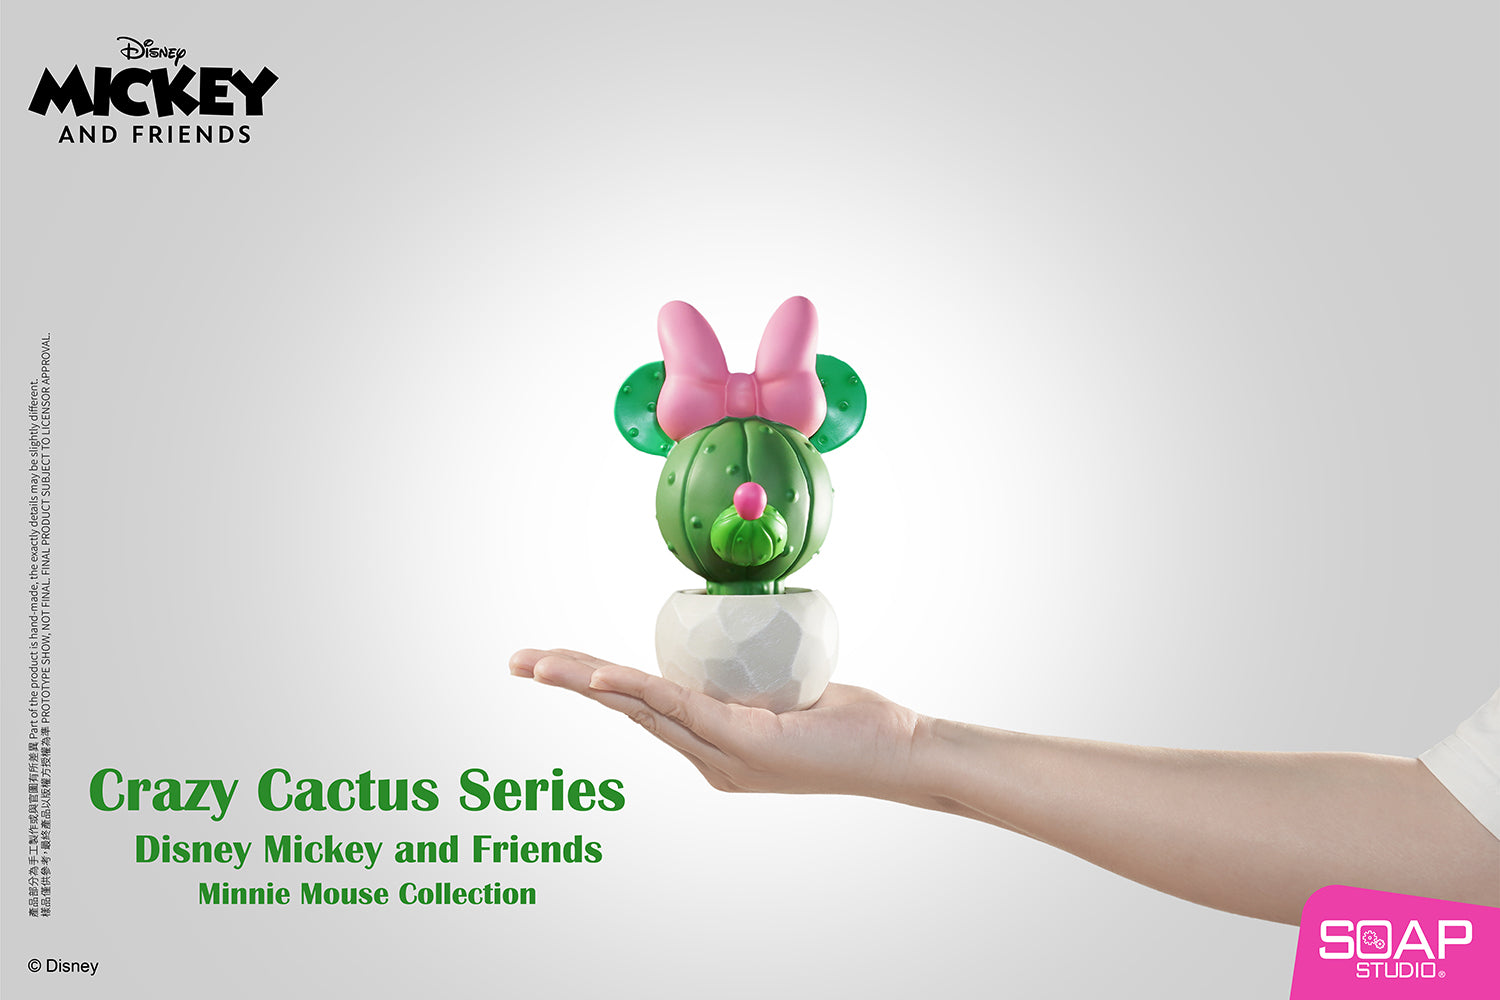 Soap Studio DY059 Minnie Mouse Crazy Cactus Figure